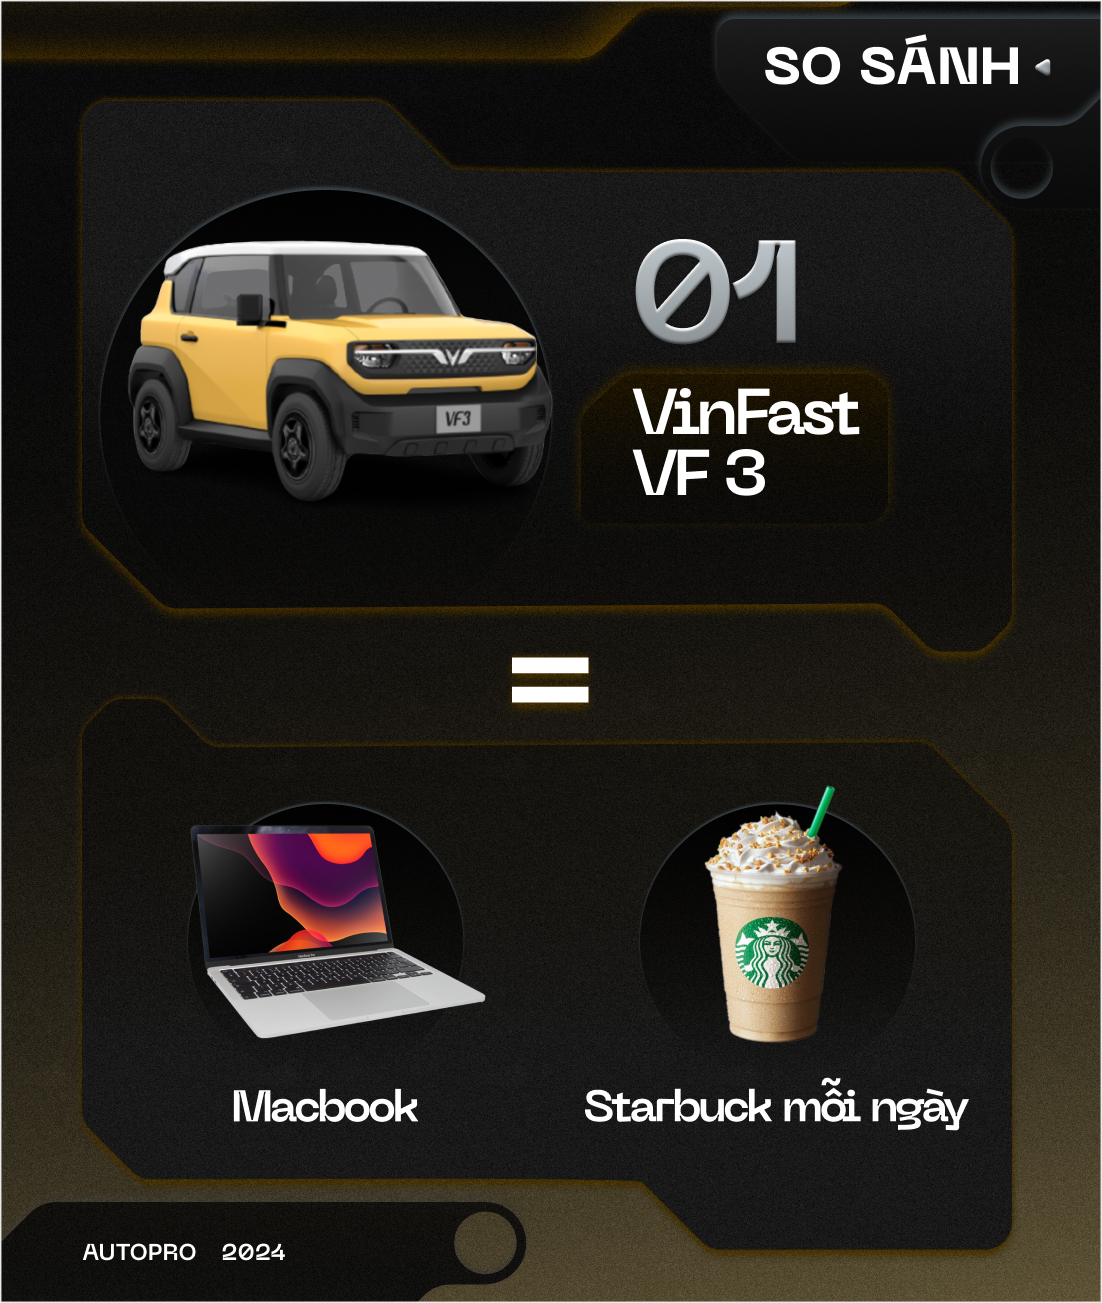 Nhịn uống trà sữa mỗi tháng, bạn có thể mua được VinFast VF 3  - Ảnh 3.